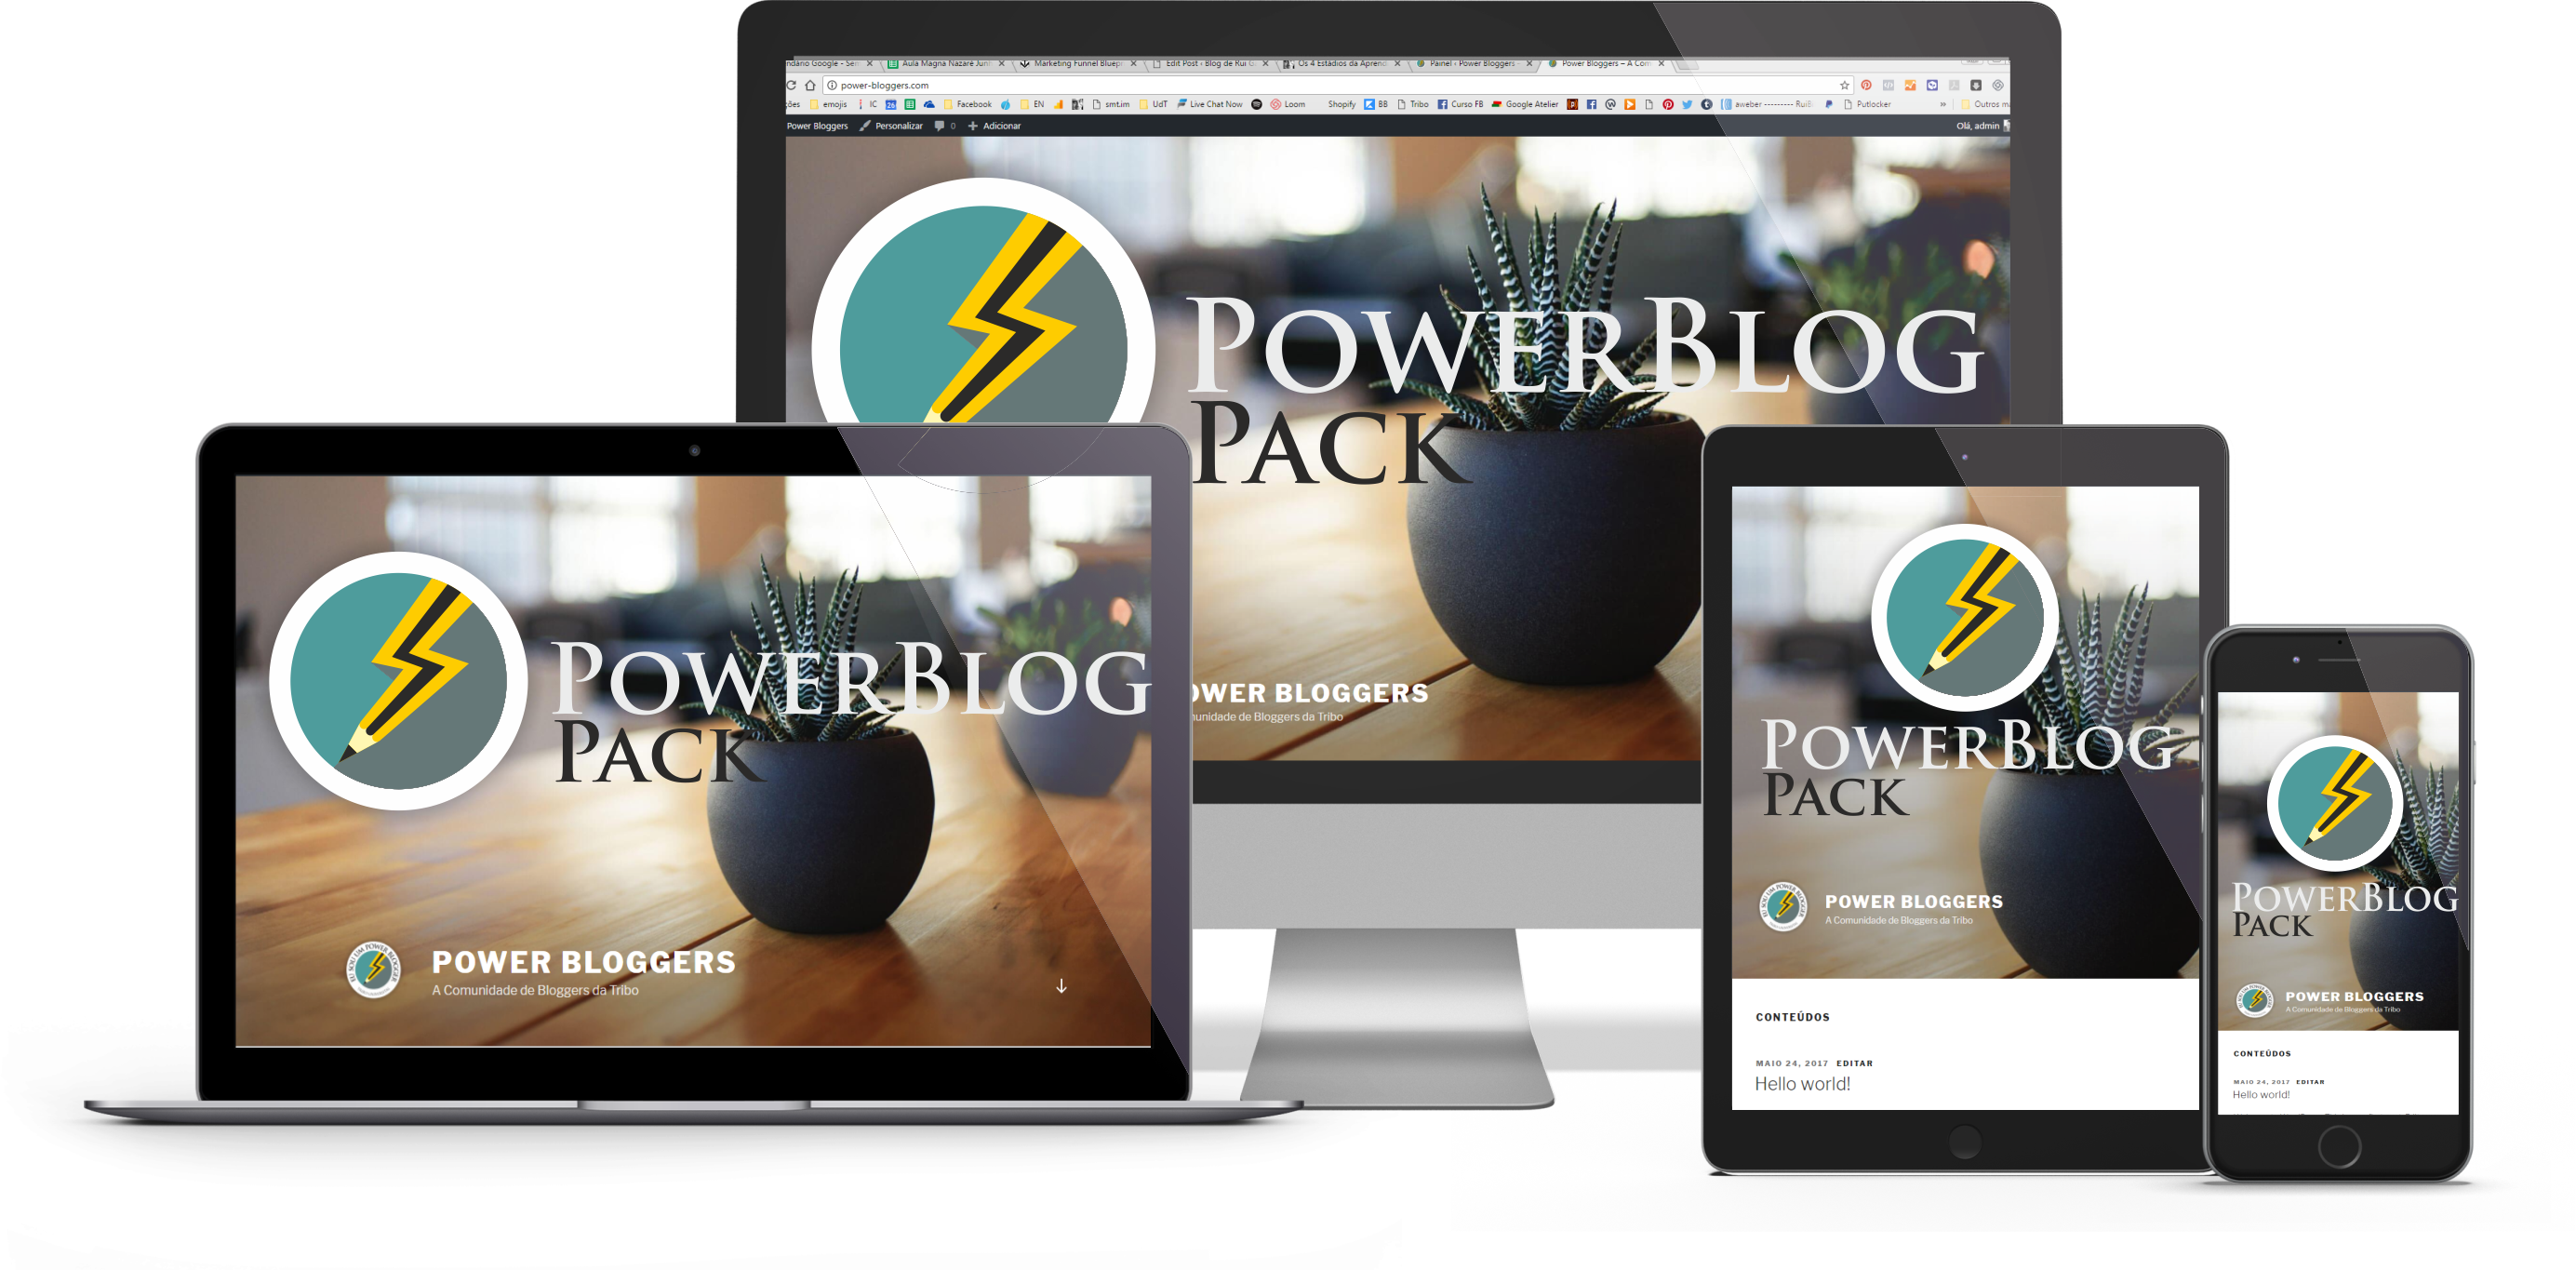 Power Blog Pack